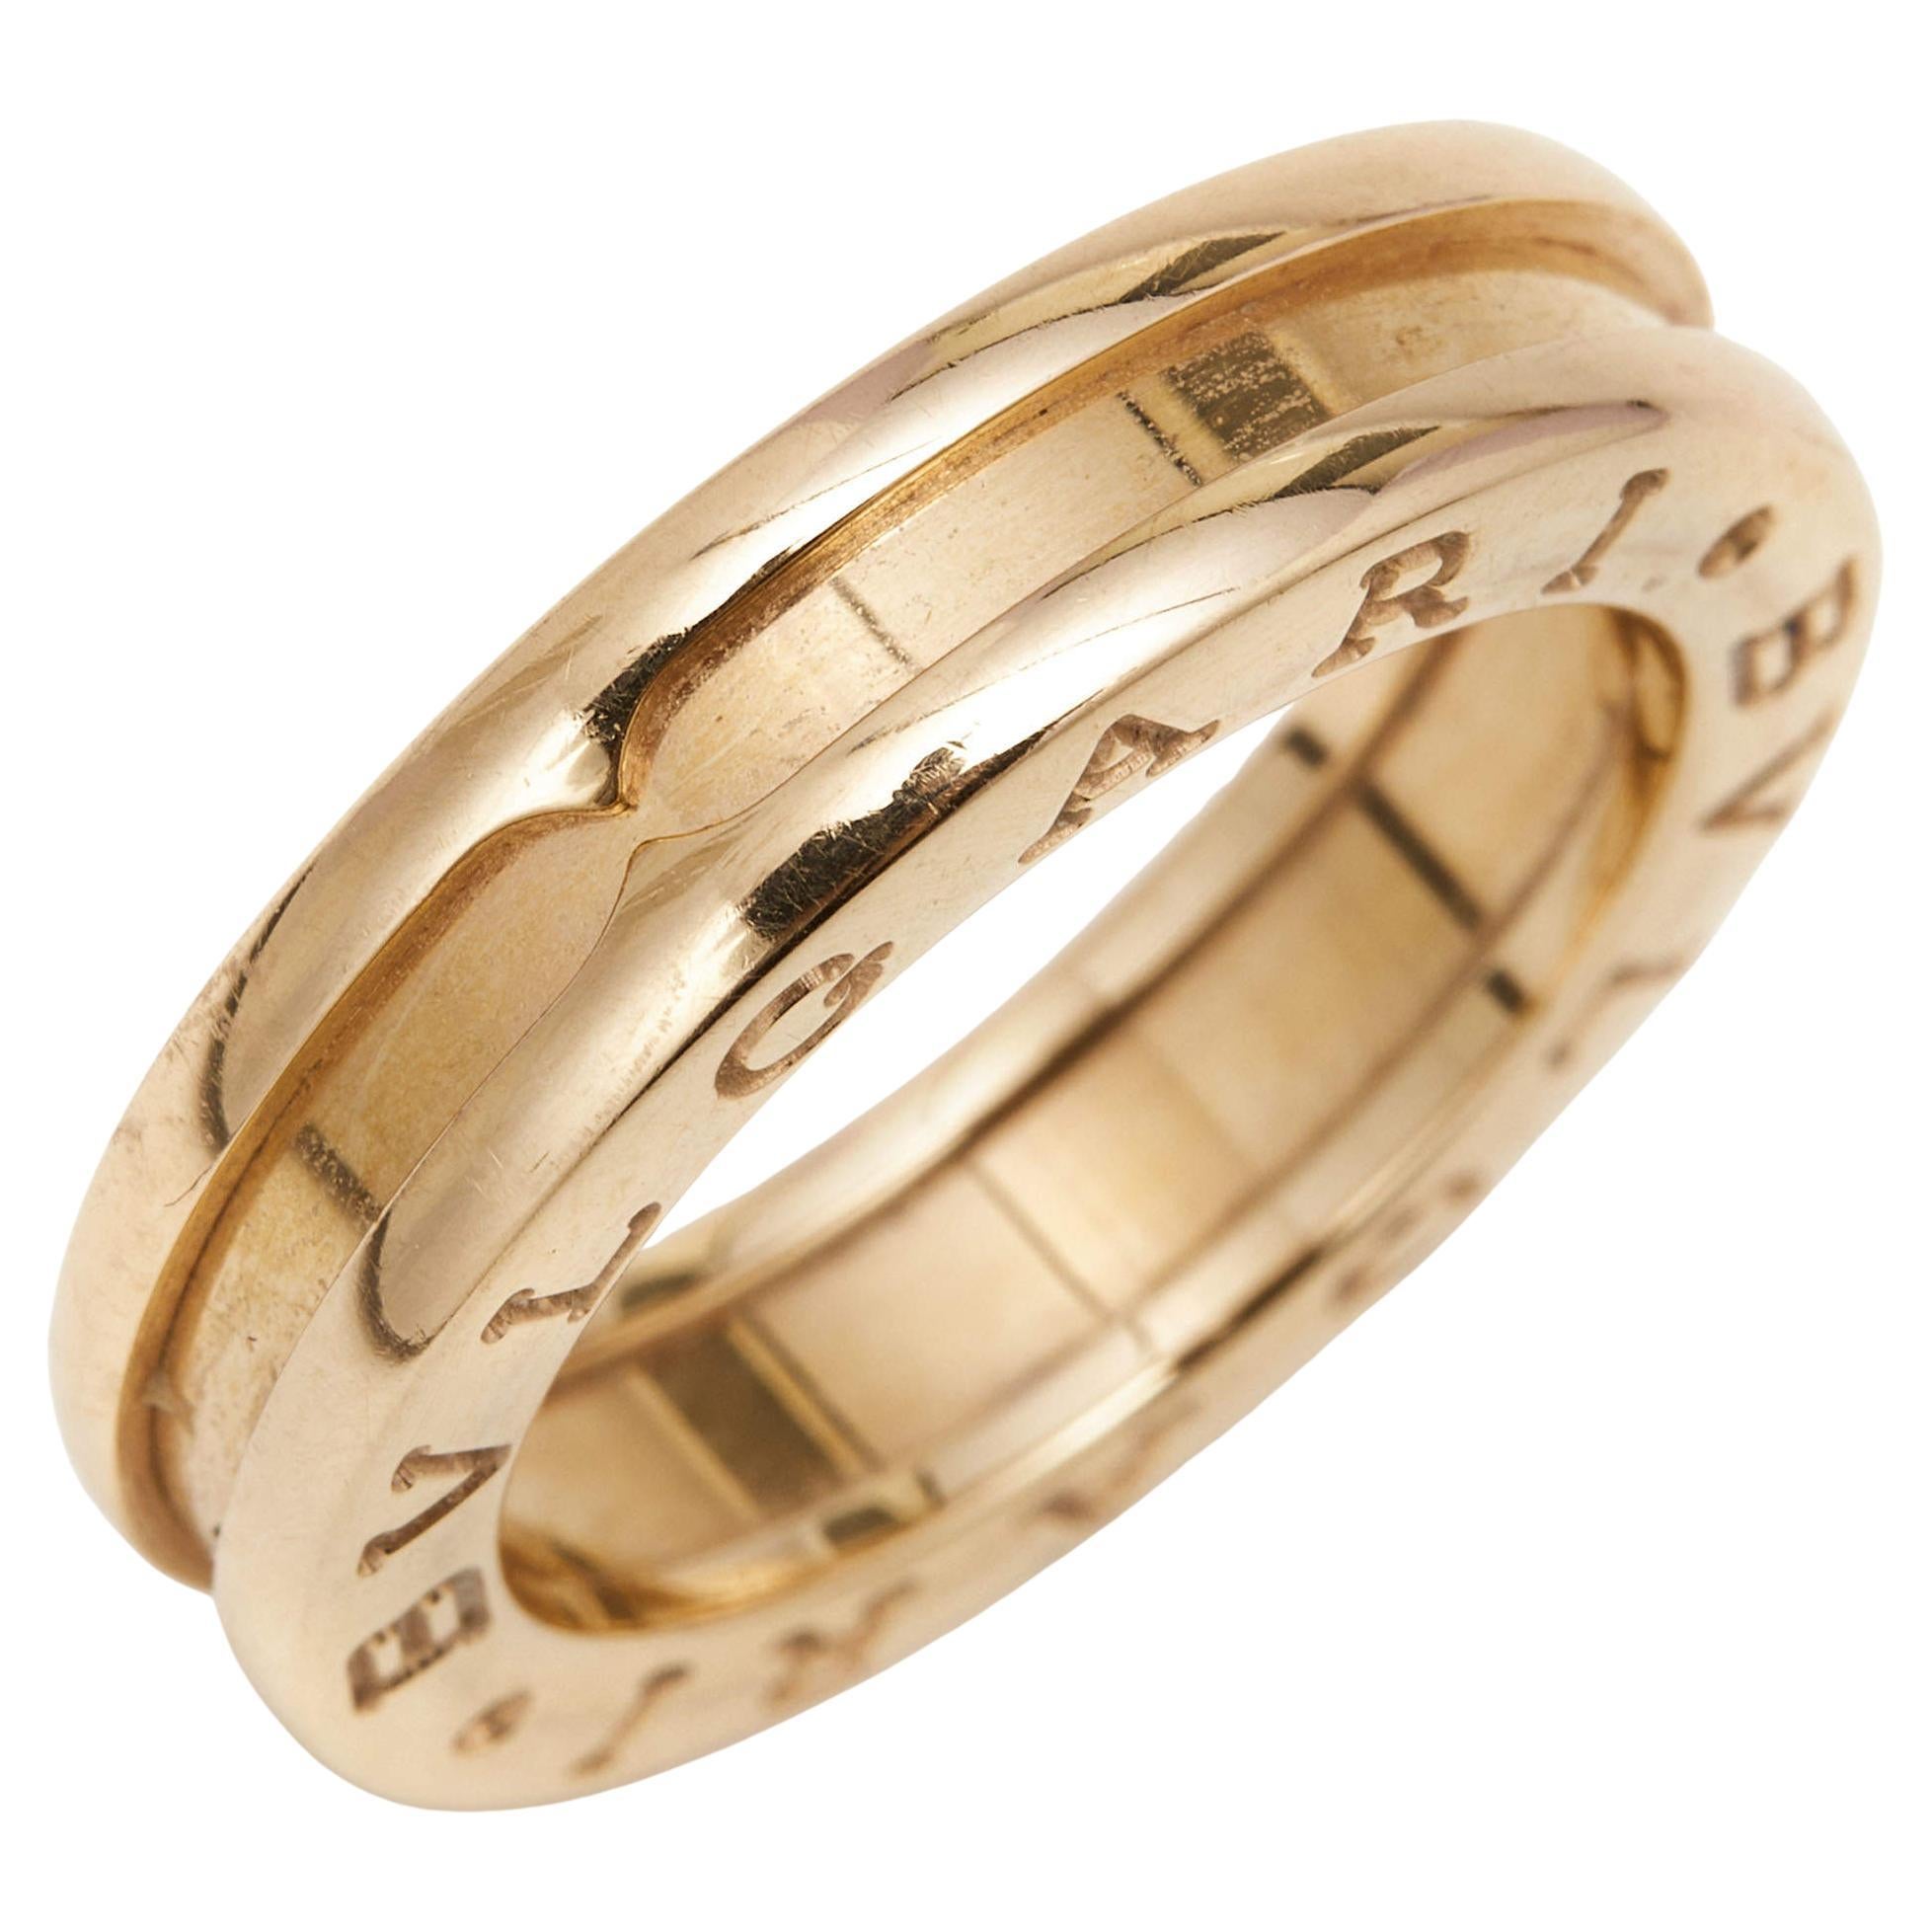 Bvlgari B.Zero1 1-Band 18k Rose Gold Ring Size 48